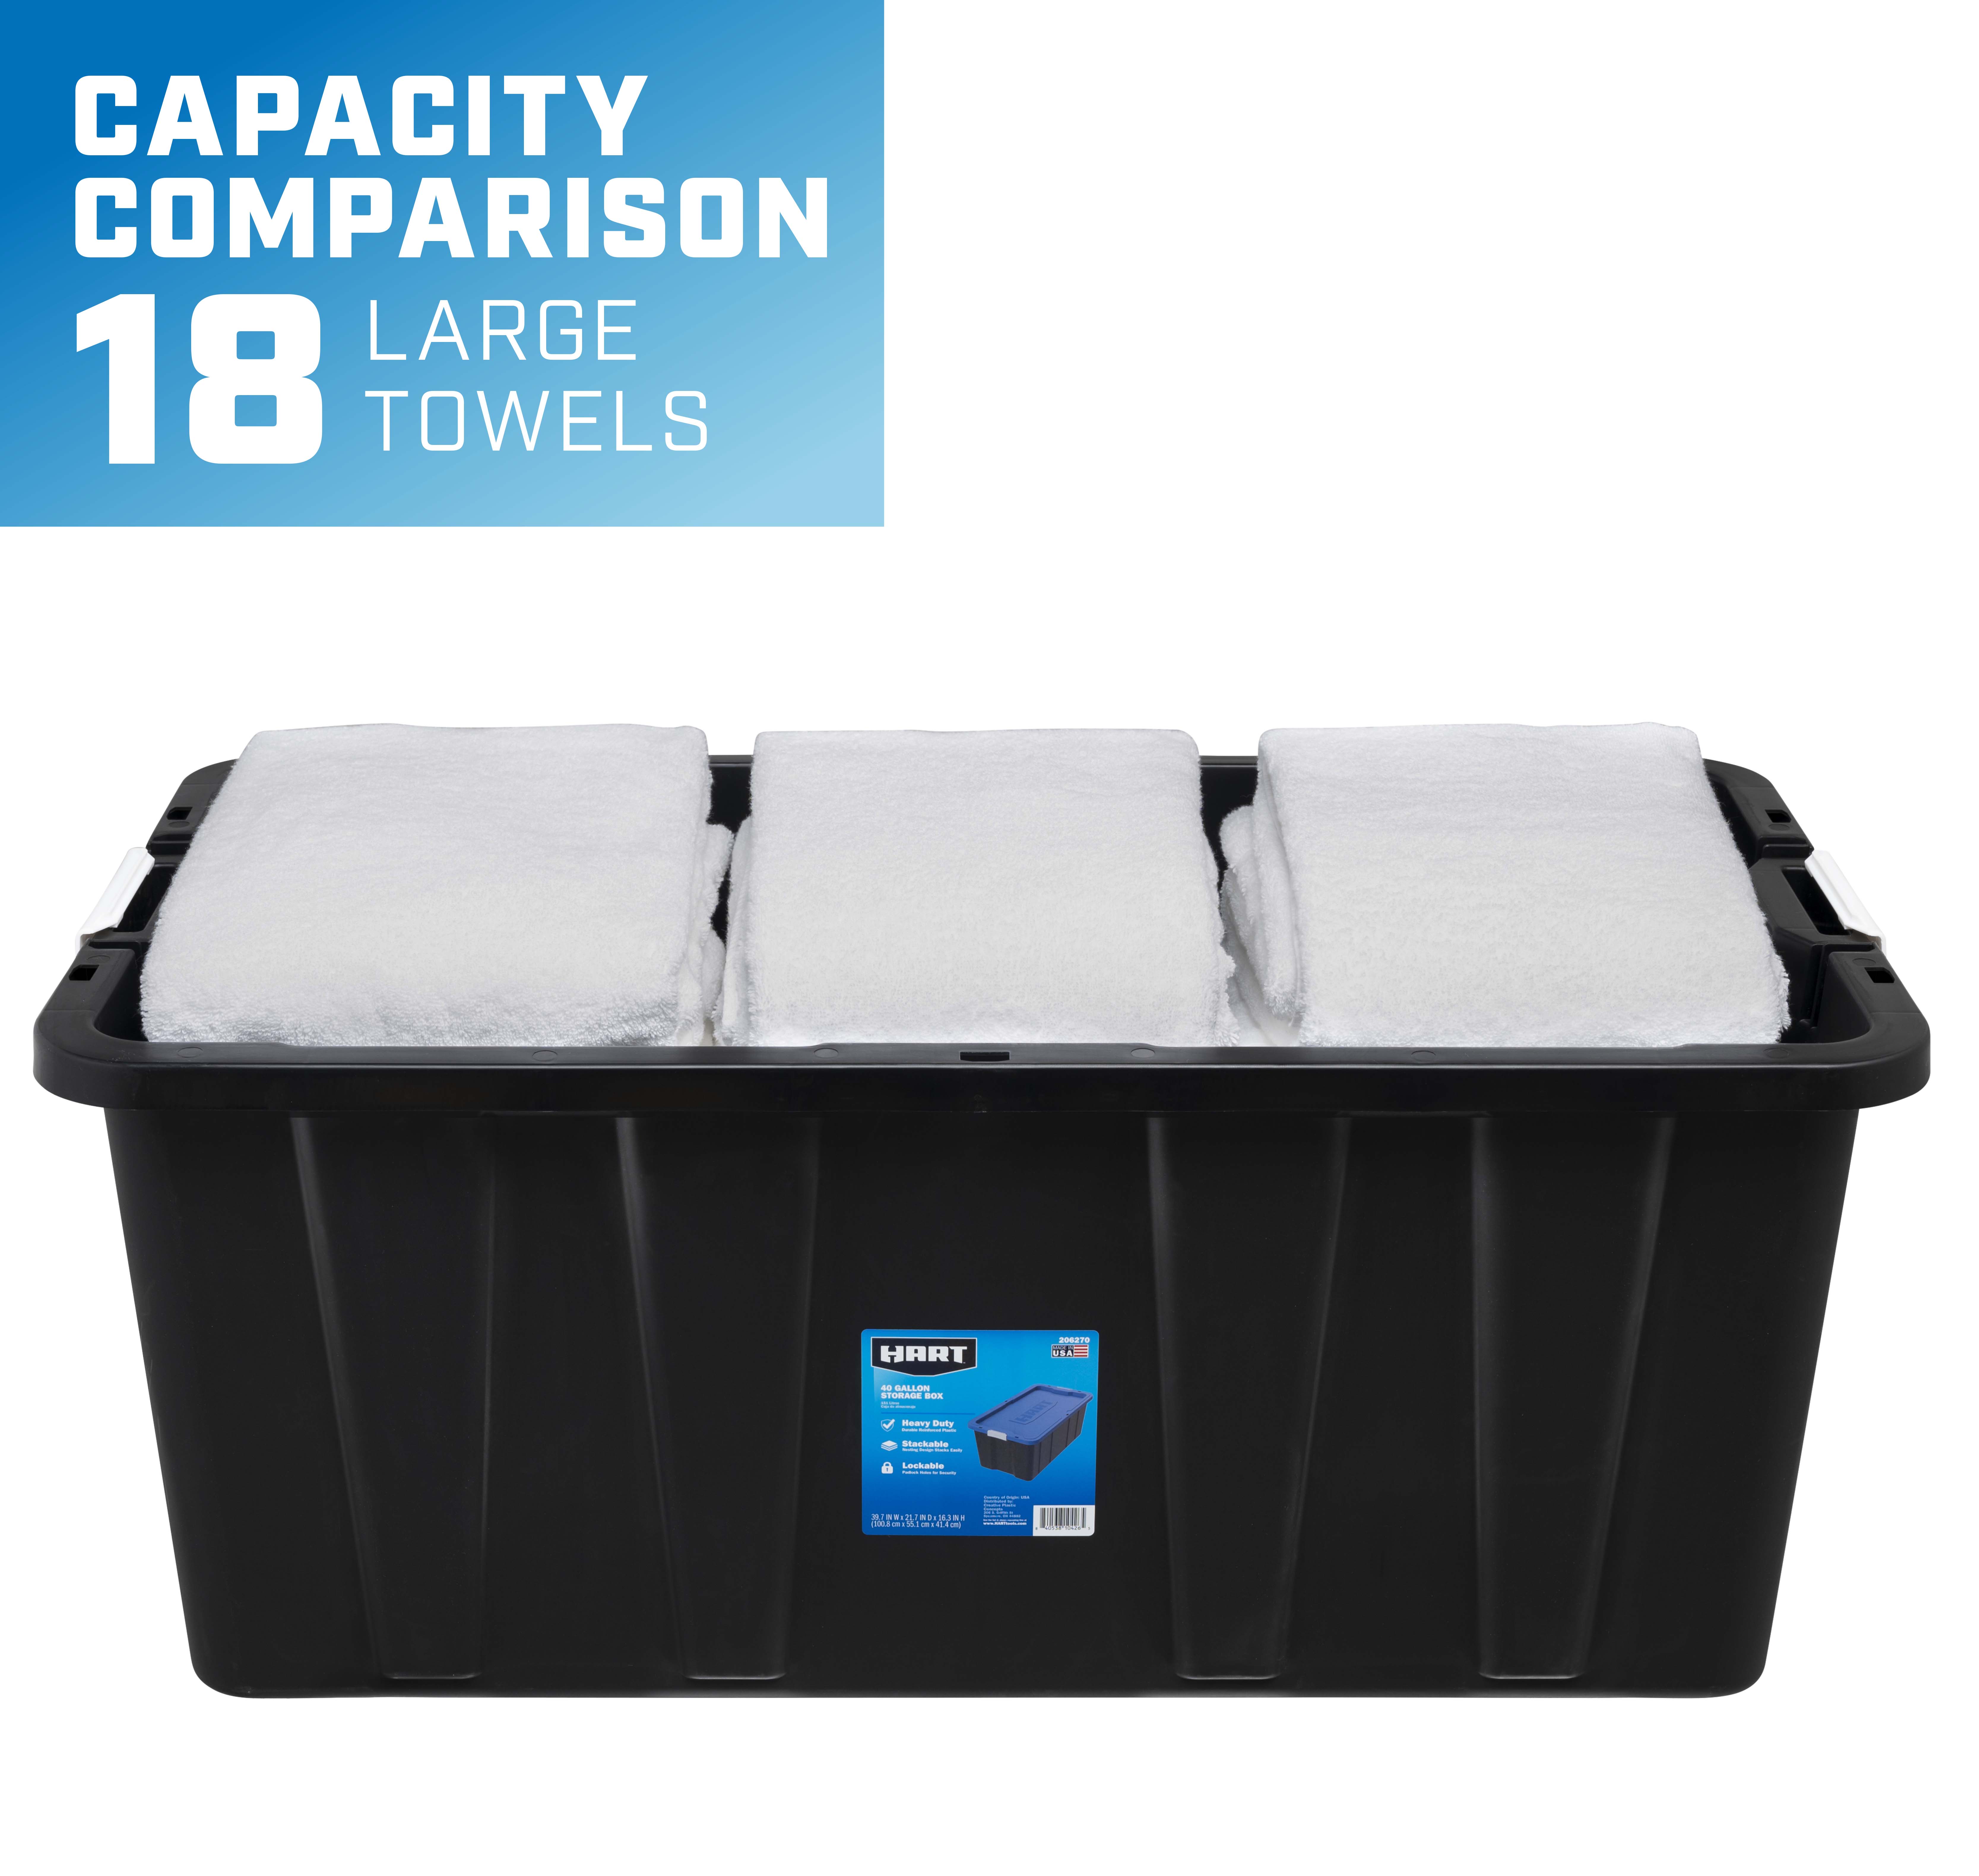 capacity comparison- 18 large towels